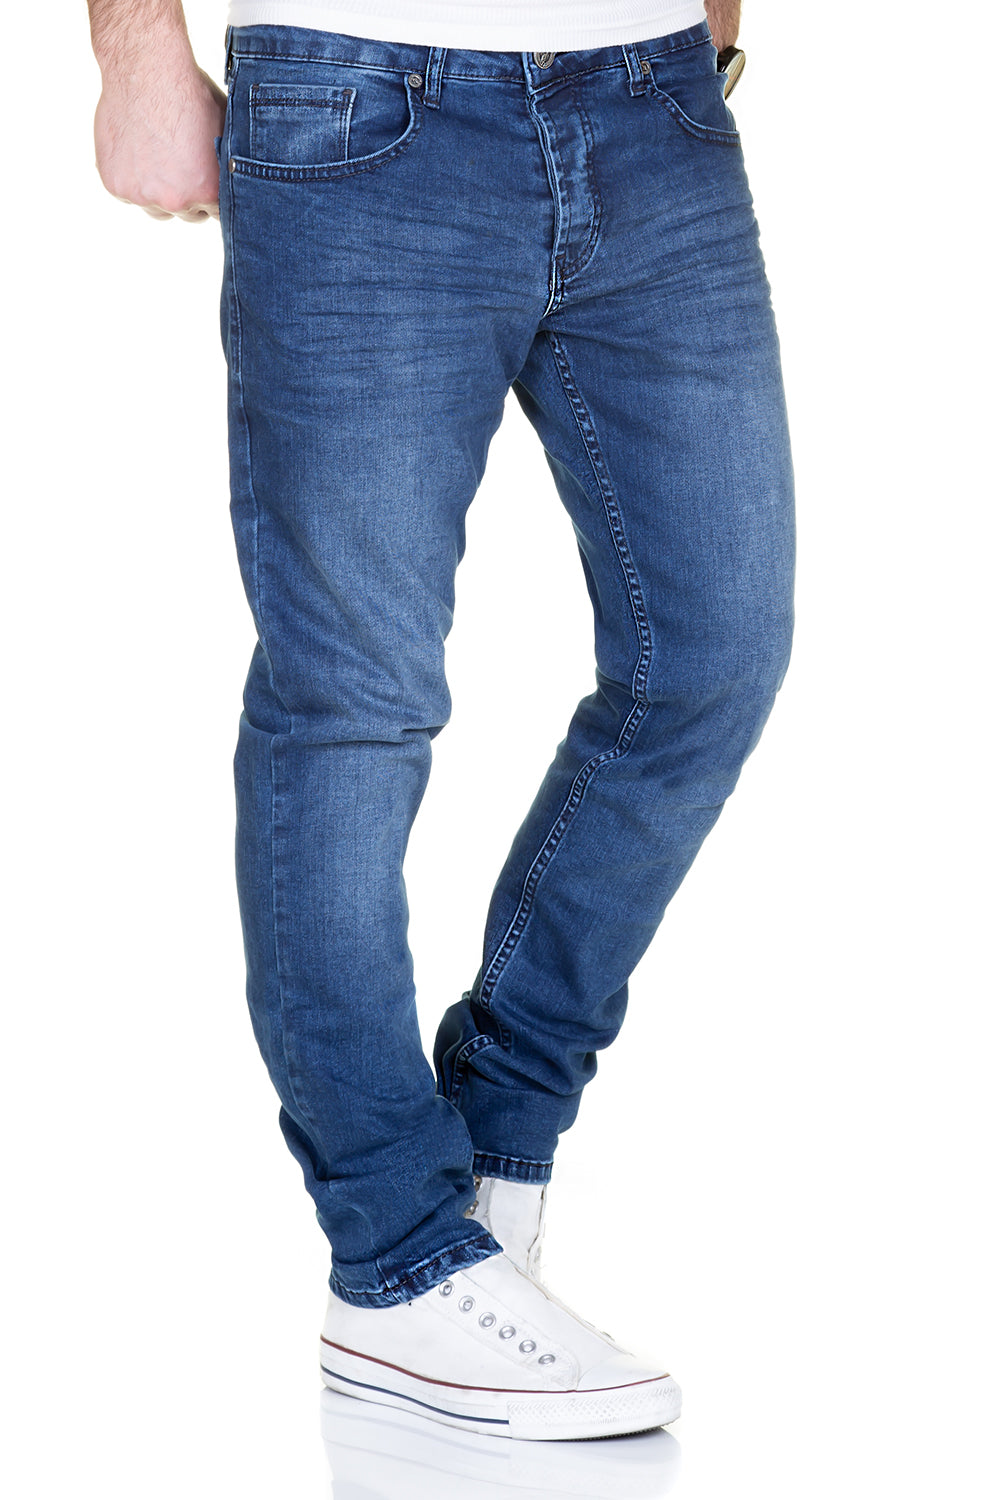 Jeans 2081-1001 : 1001 blau-Farbe-Blau_final